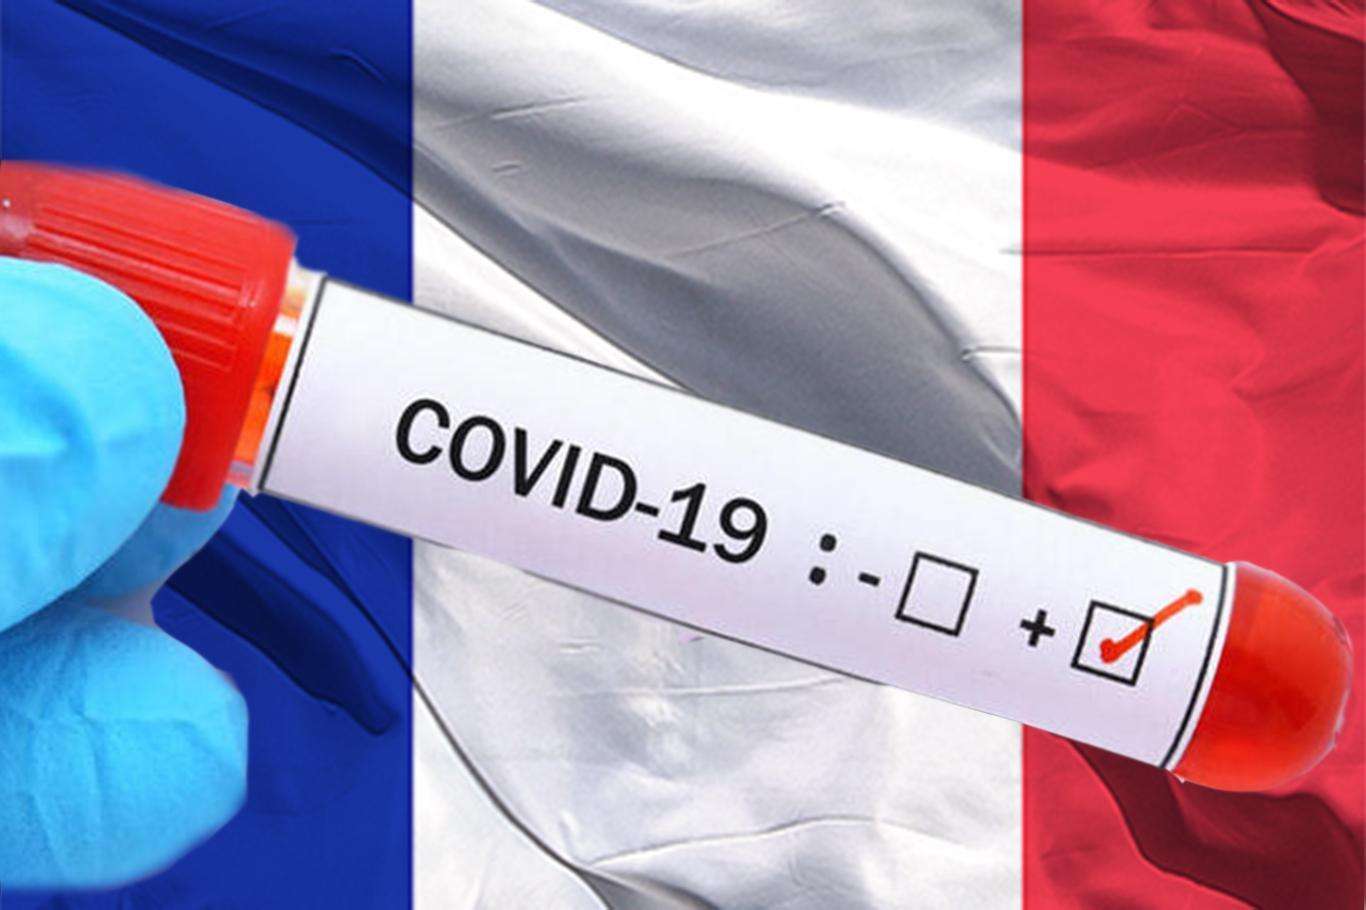 Fransa'da son 24 saatte 4 bin 70 yeni Covid-19 vakası tespit edildi.